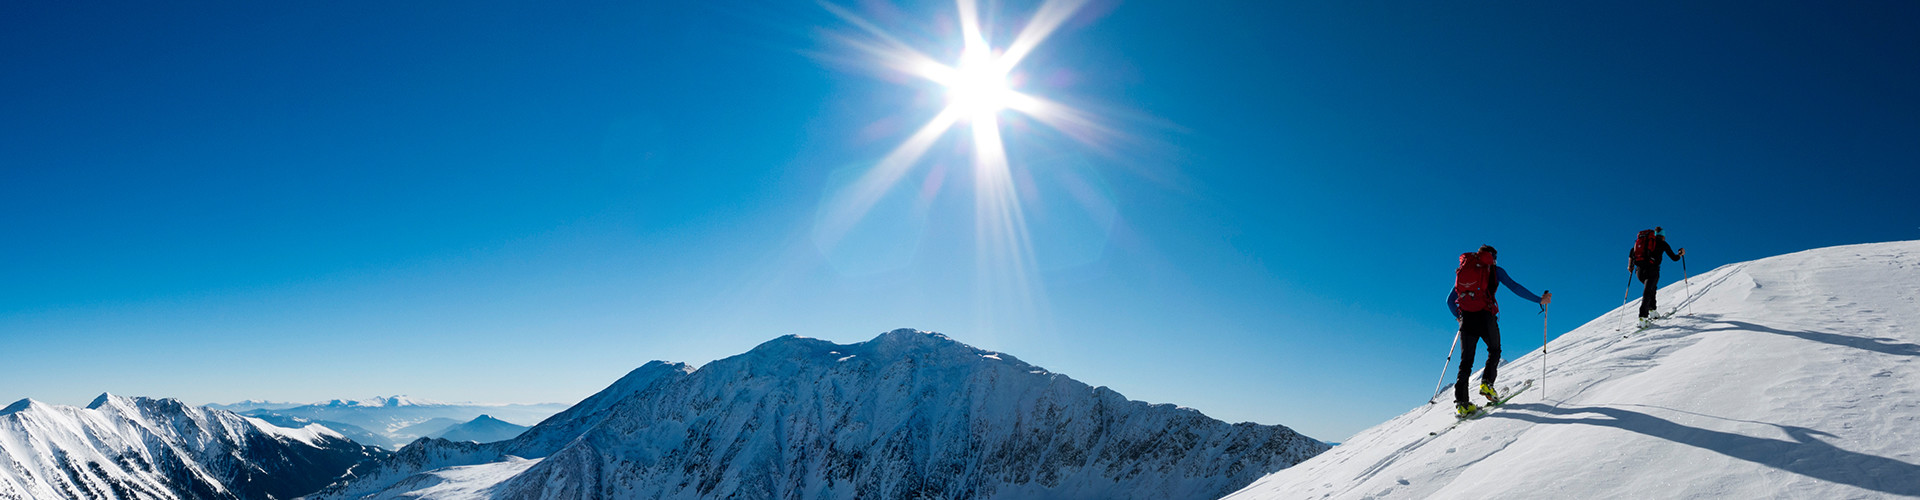 Zwei Skitourengeher im Aufstieg in verschneiter Winterlandschaft